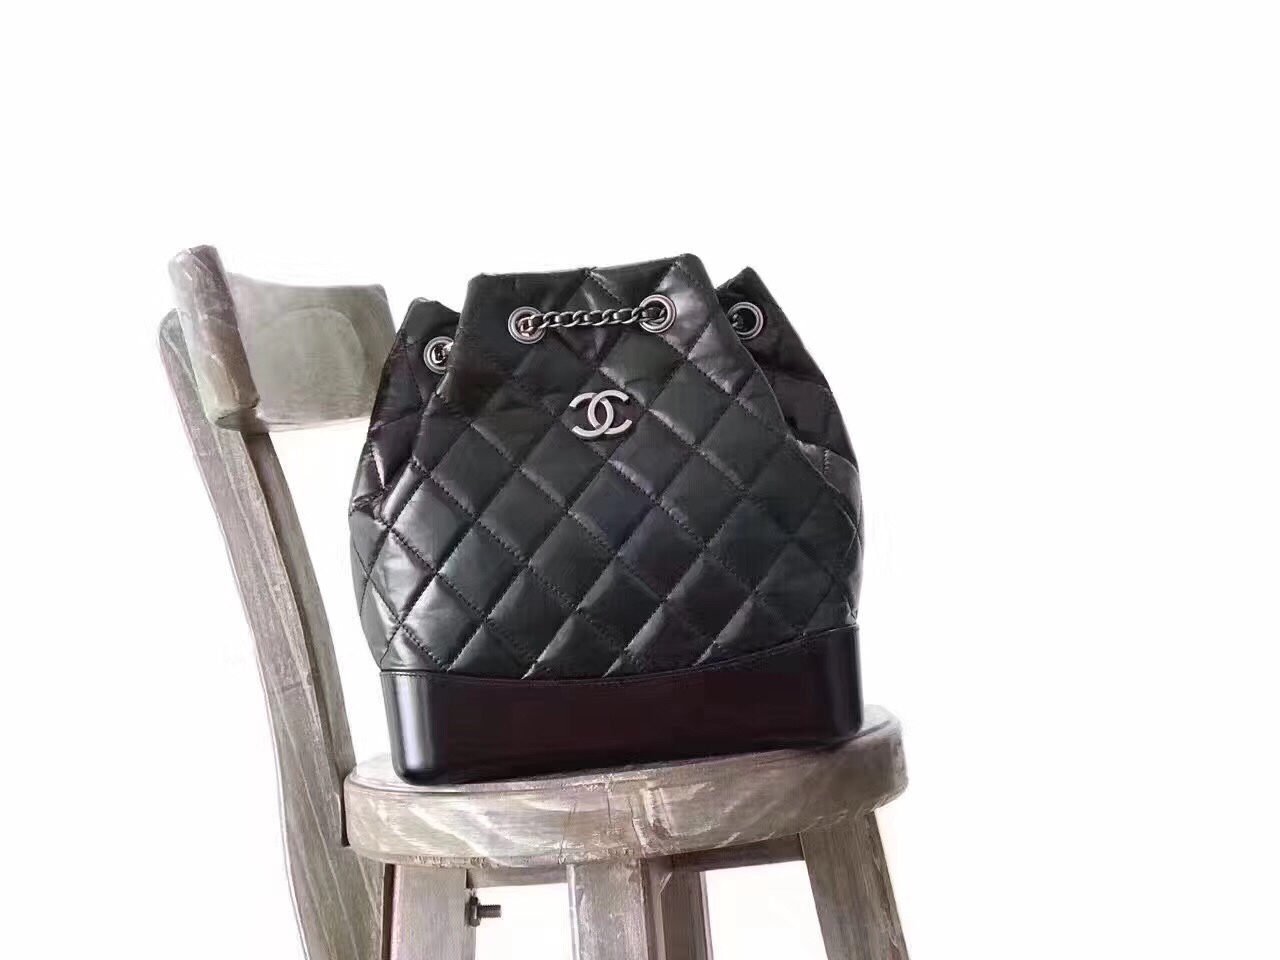 Túi xách Chanel Gabrielle Backpack siêu cấp - TXCN157